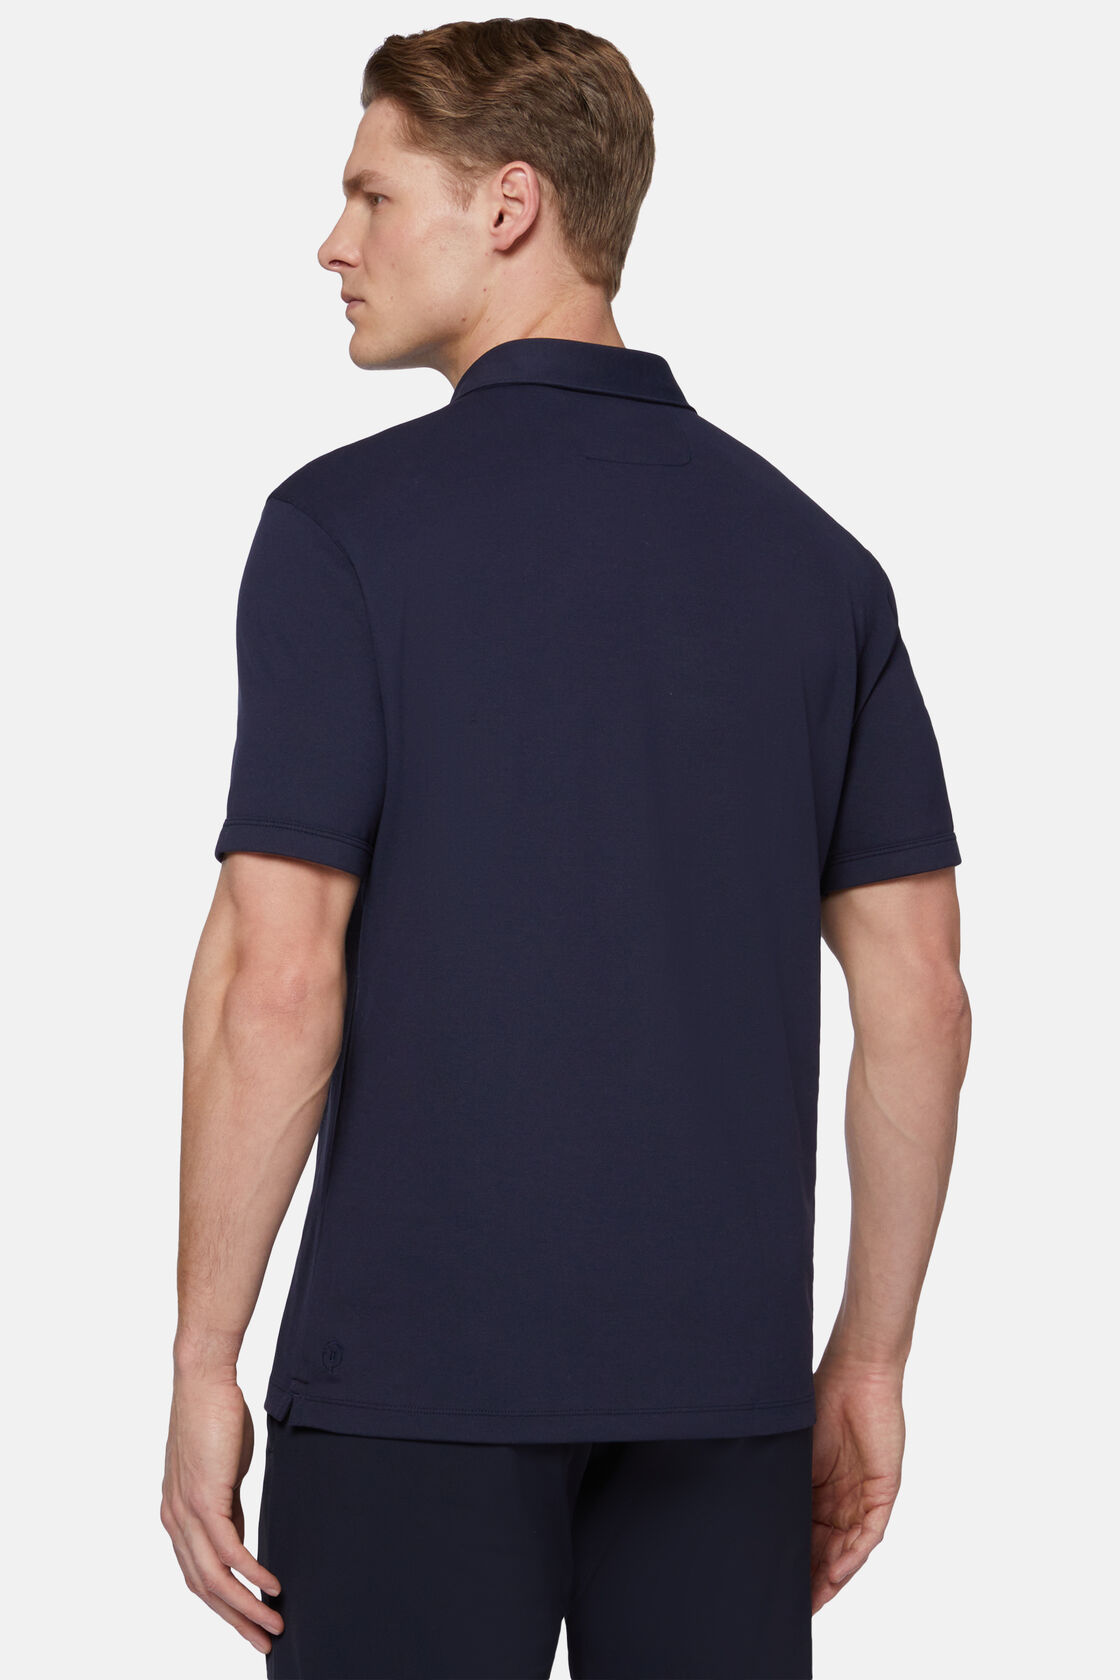 Tavaszi piké pólóing nagy teljesítményű anyagból, Navy blue, hi-res